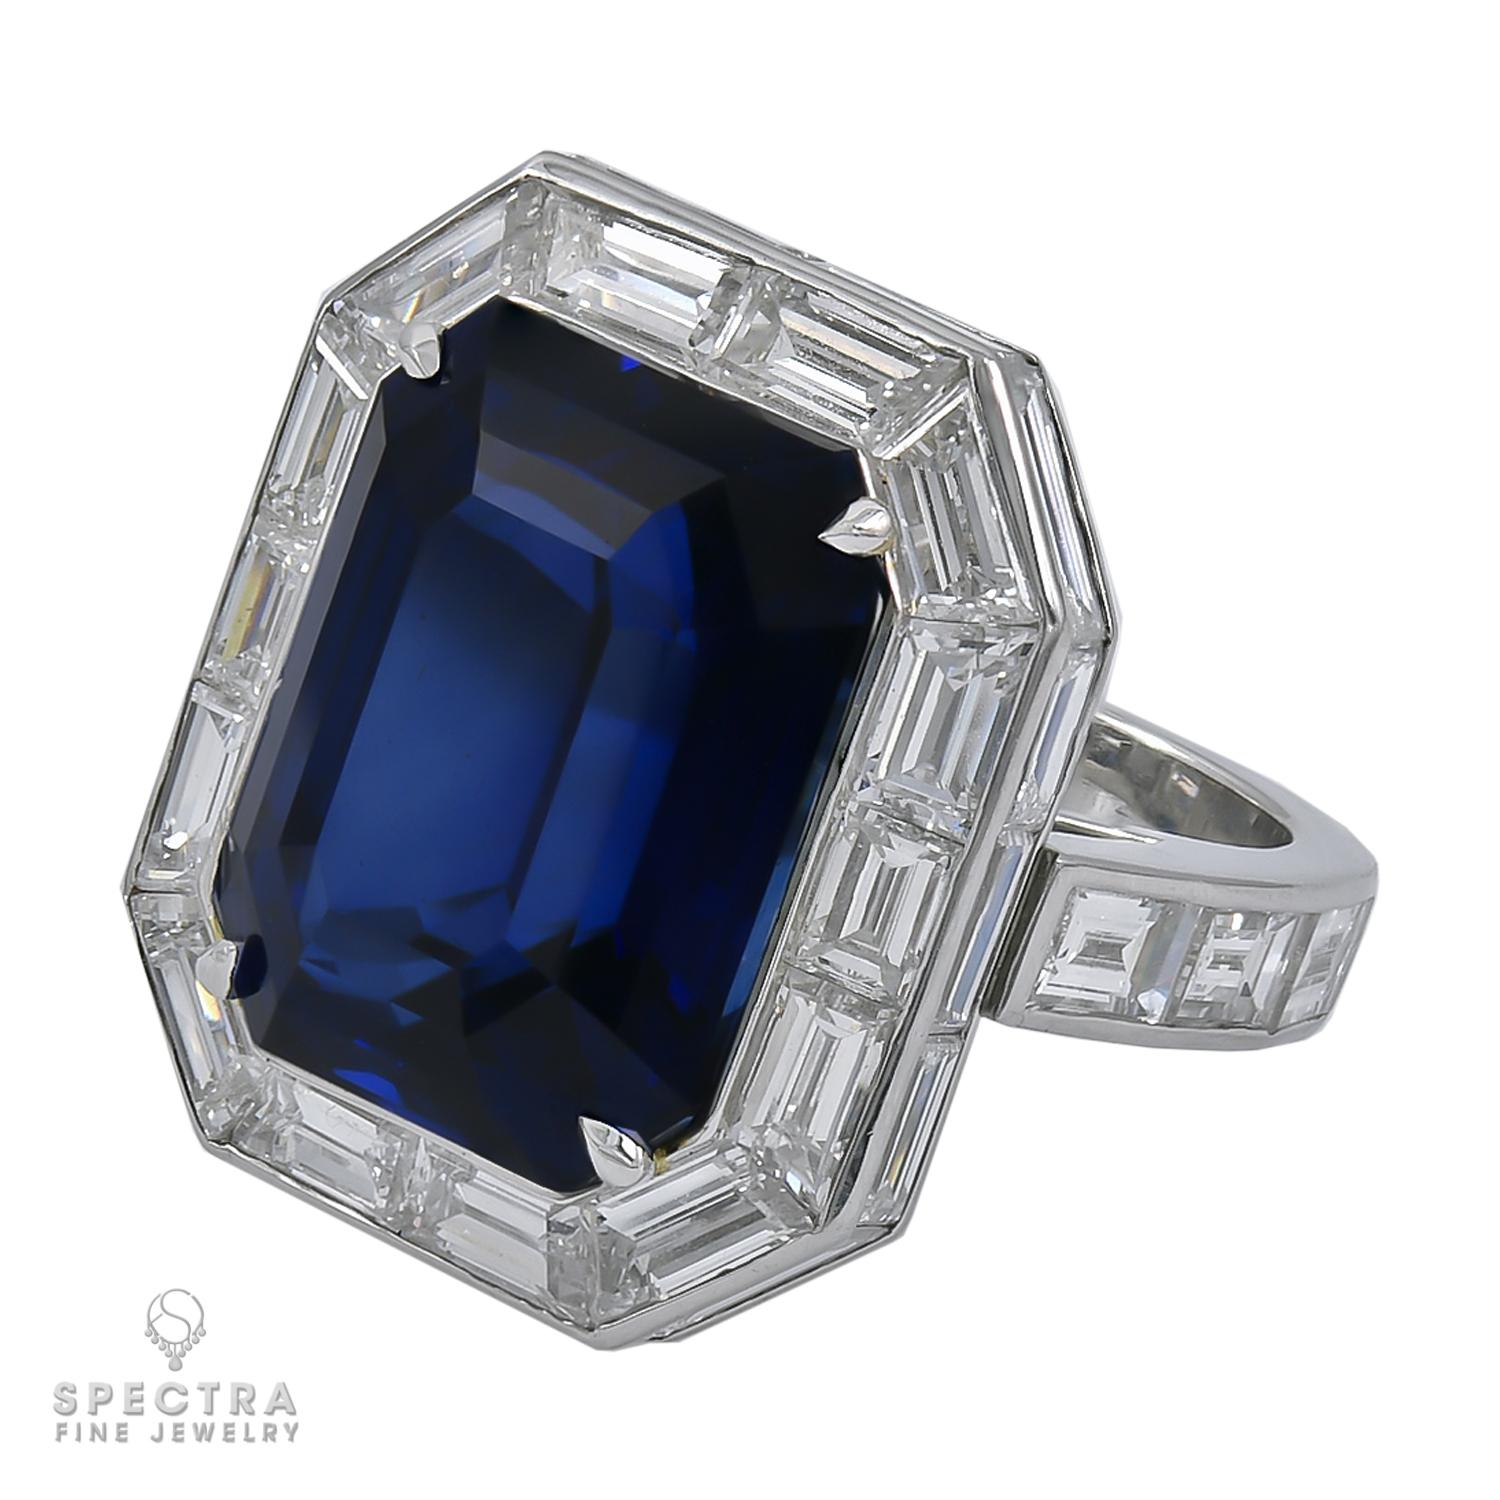 Une bague étonnante présentant un saphir bleu royal de 20,12 carats et 34 diamants de forme baguette. 
Le saphir est certifié par le Gemresearch Swisslab (GRS) et d'origine malgache.
L'anneau peut être transformé en pendentif et porté avec une